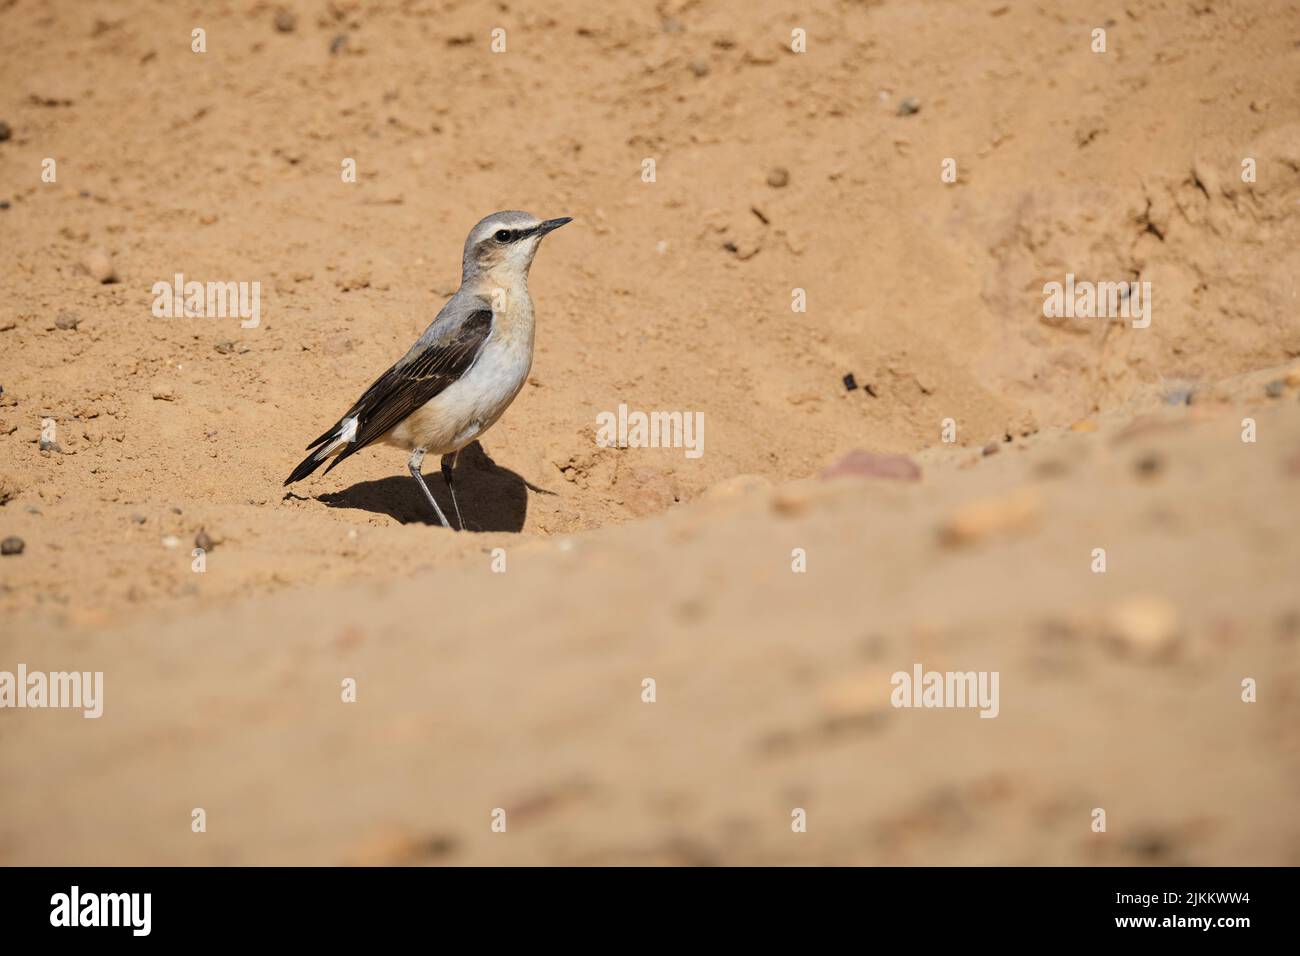 Curioso boreale in piedi su sabbia asciutta nella soleggiata giornata estiva nel deserto Foto Stock